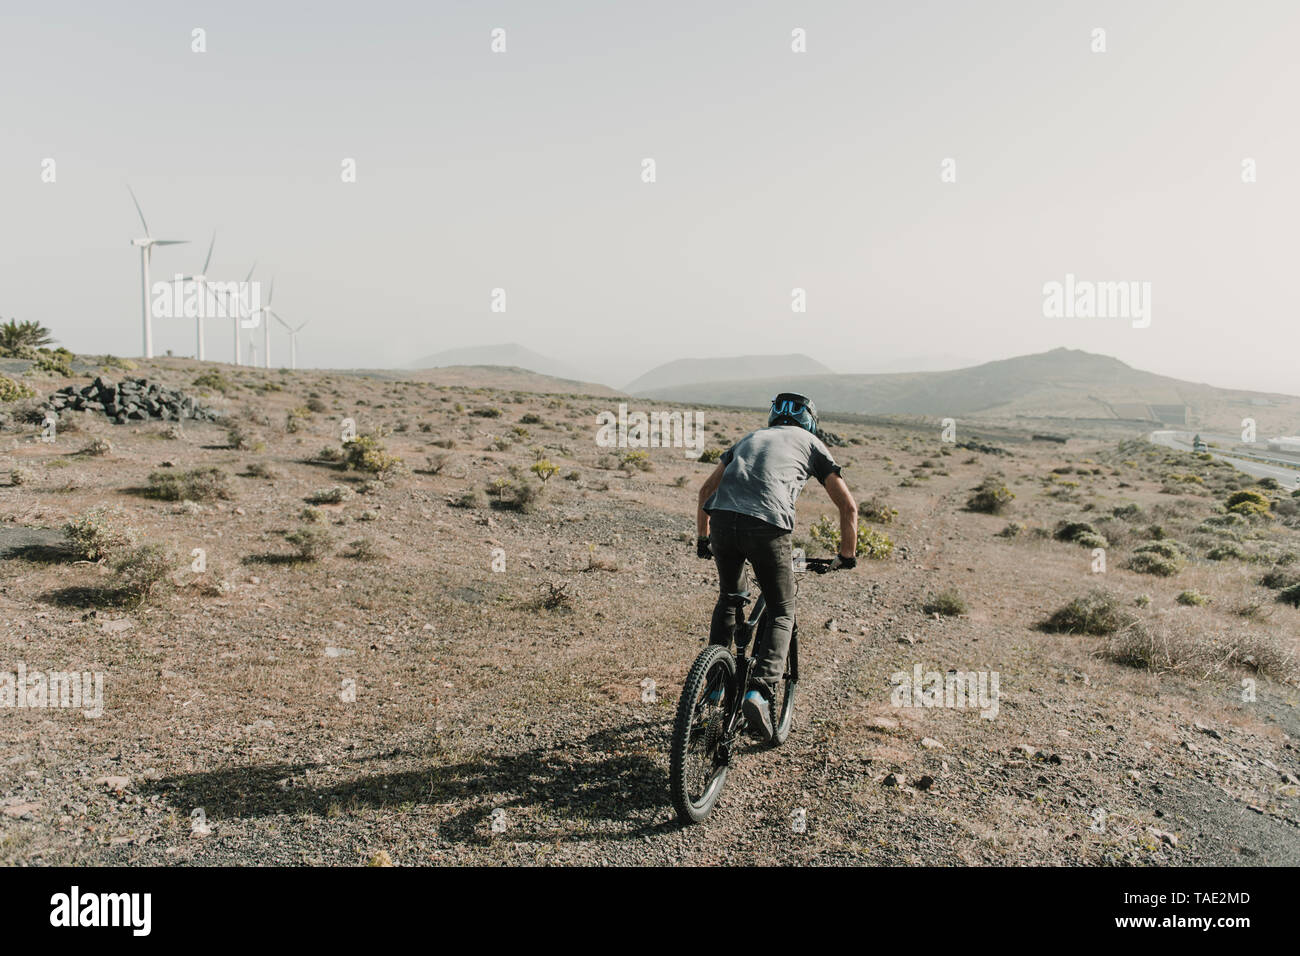 Spanien, Lanzarote, Mountainbiker auf einer Reise in Wüstenhaft Landschaft Stockfoto